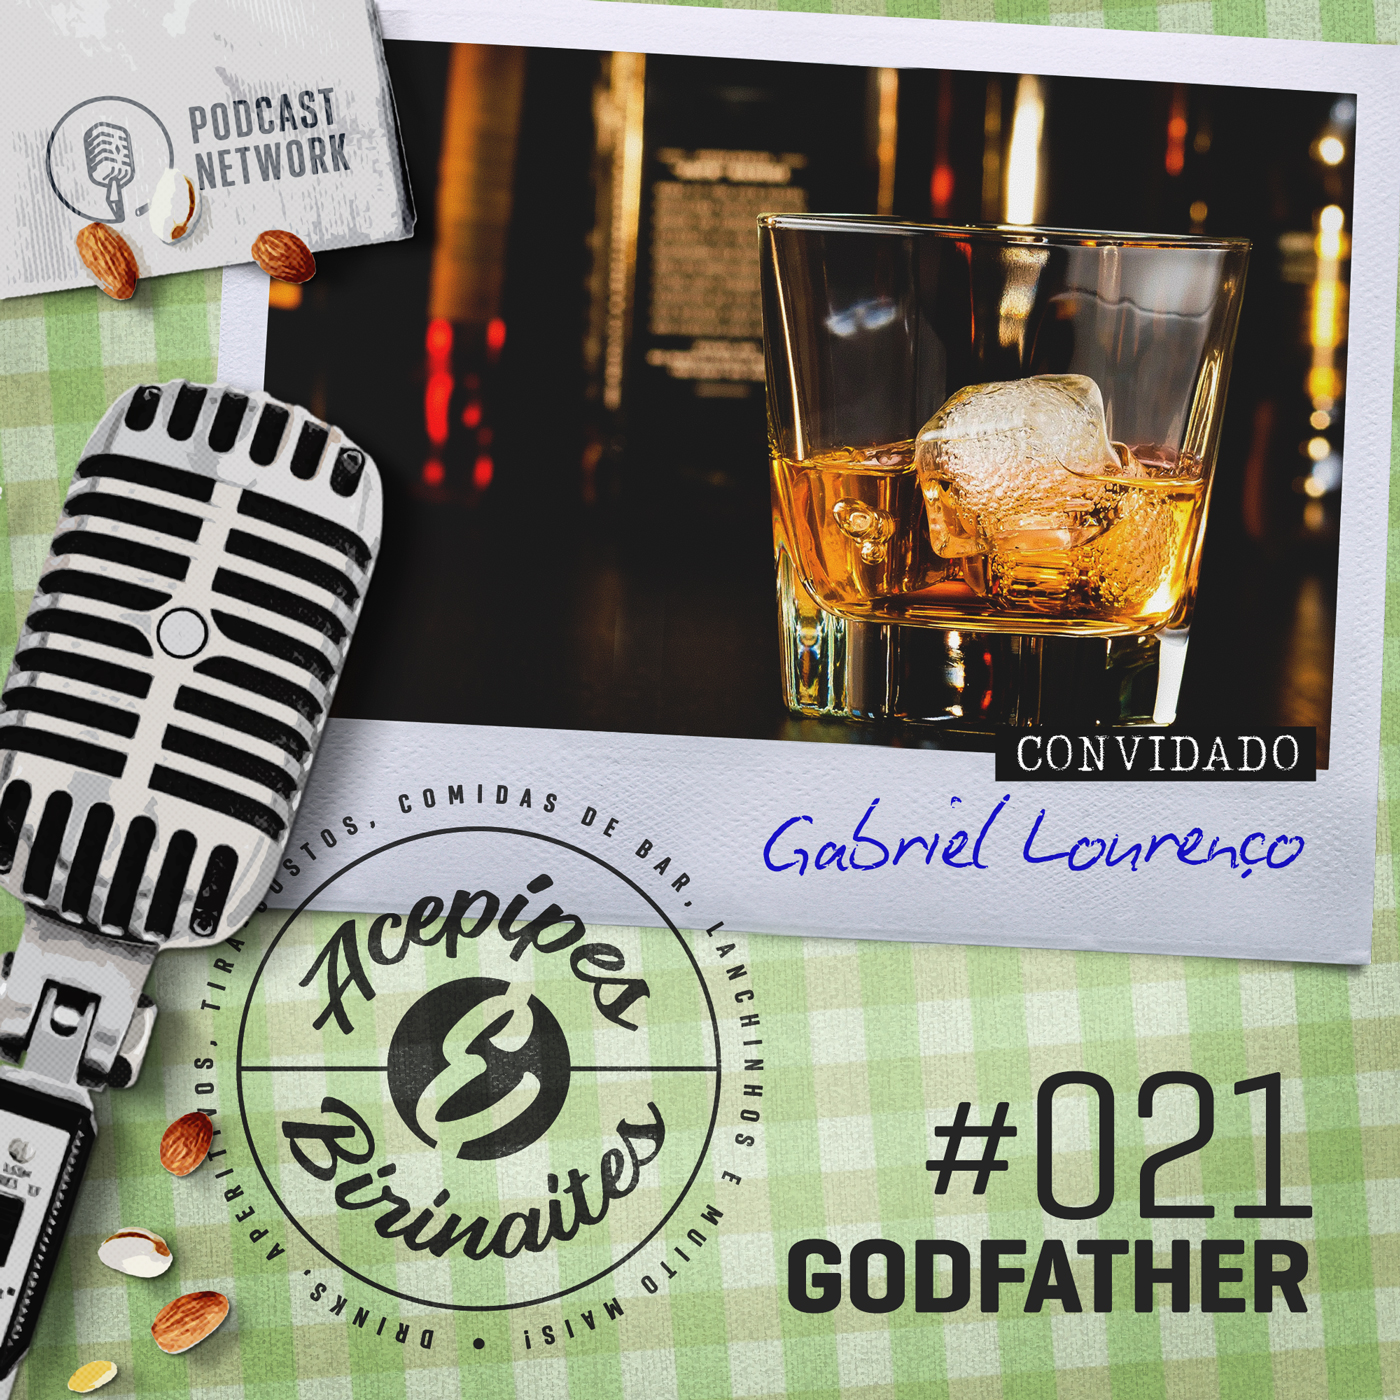 Acepipes e Birinaites #021 - Godfather, com Gabriel Lourenço